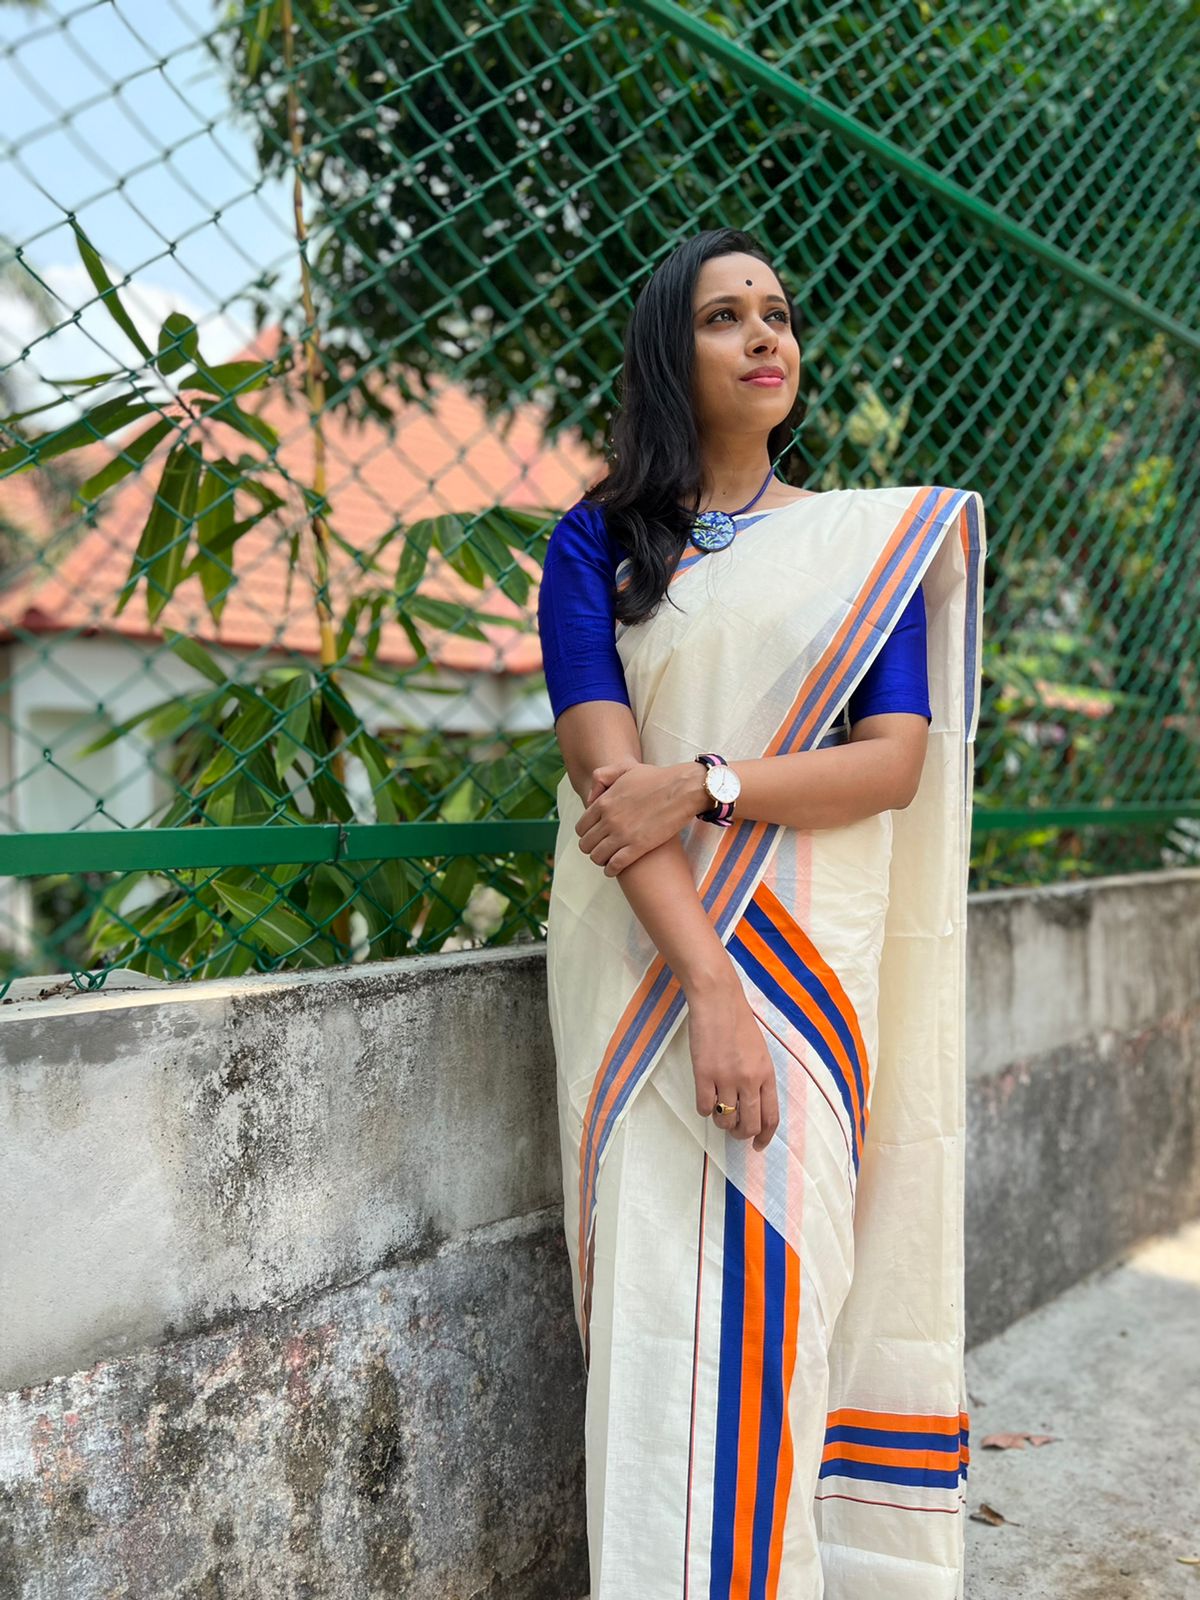 Kerala Cotton  Mundum Neriyathum Single (Set Mundu) with Blue and Orange Border